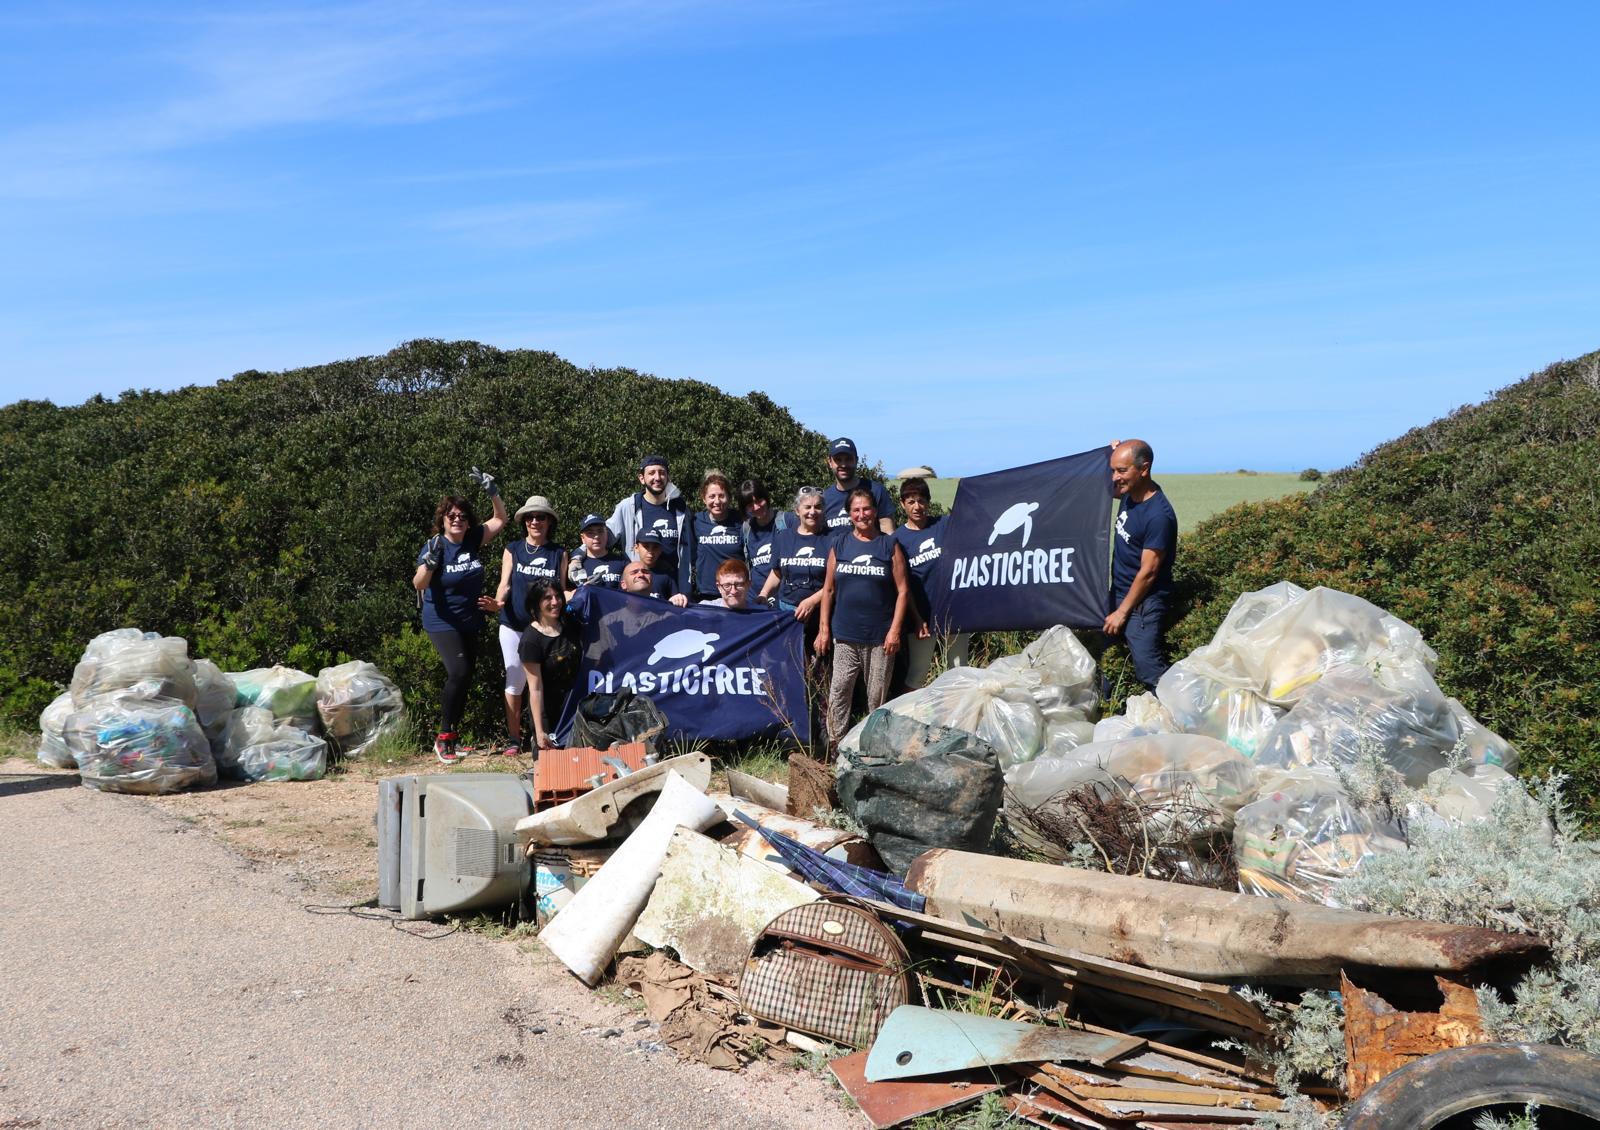 Plastic Free libera da 800 chili di plastica e rifiuti i fortini sulla costa di Stintino (SS)